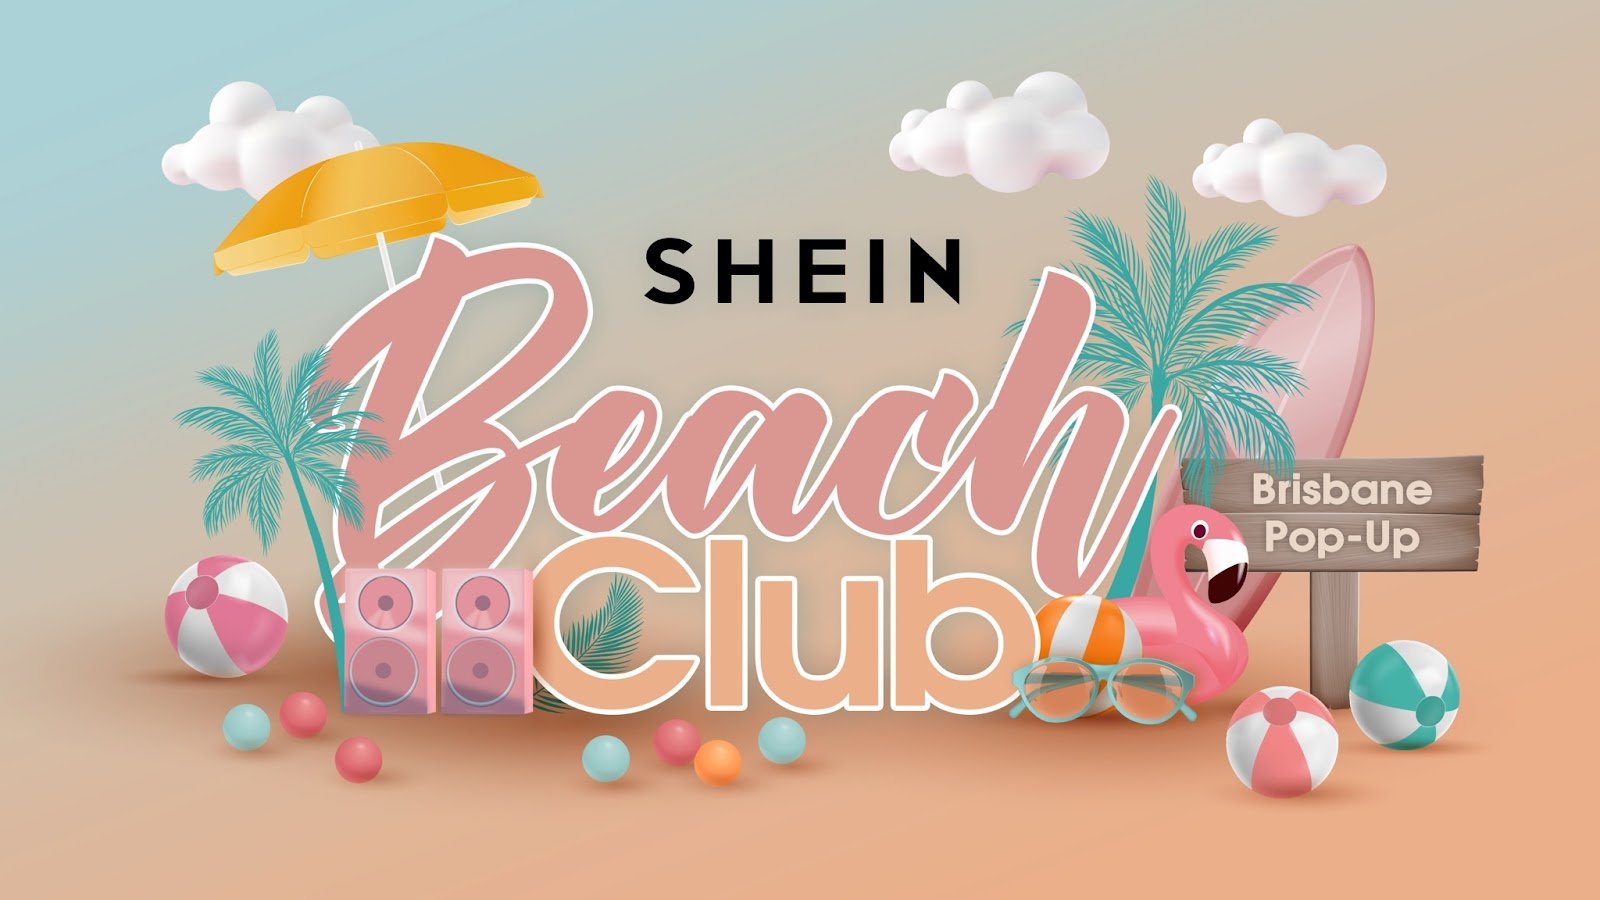 SHEIN set to make waves in Brisbane with Beach Club Pop-Up